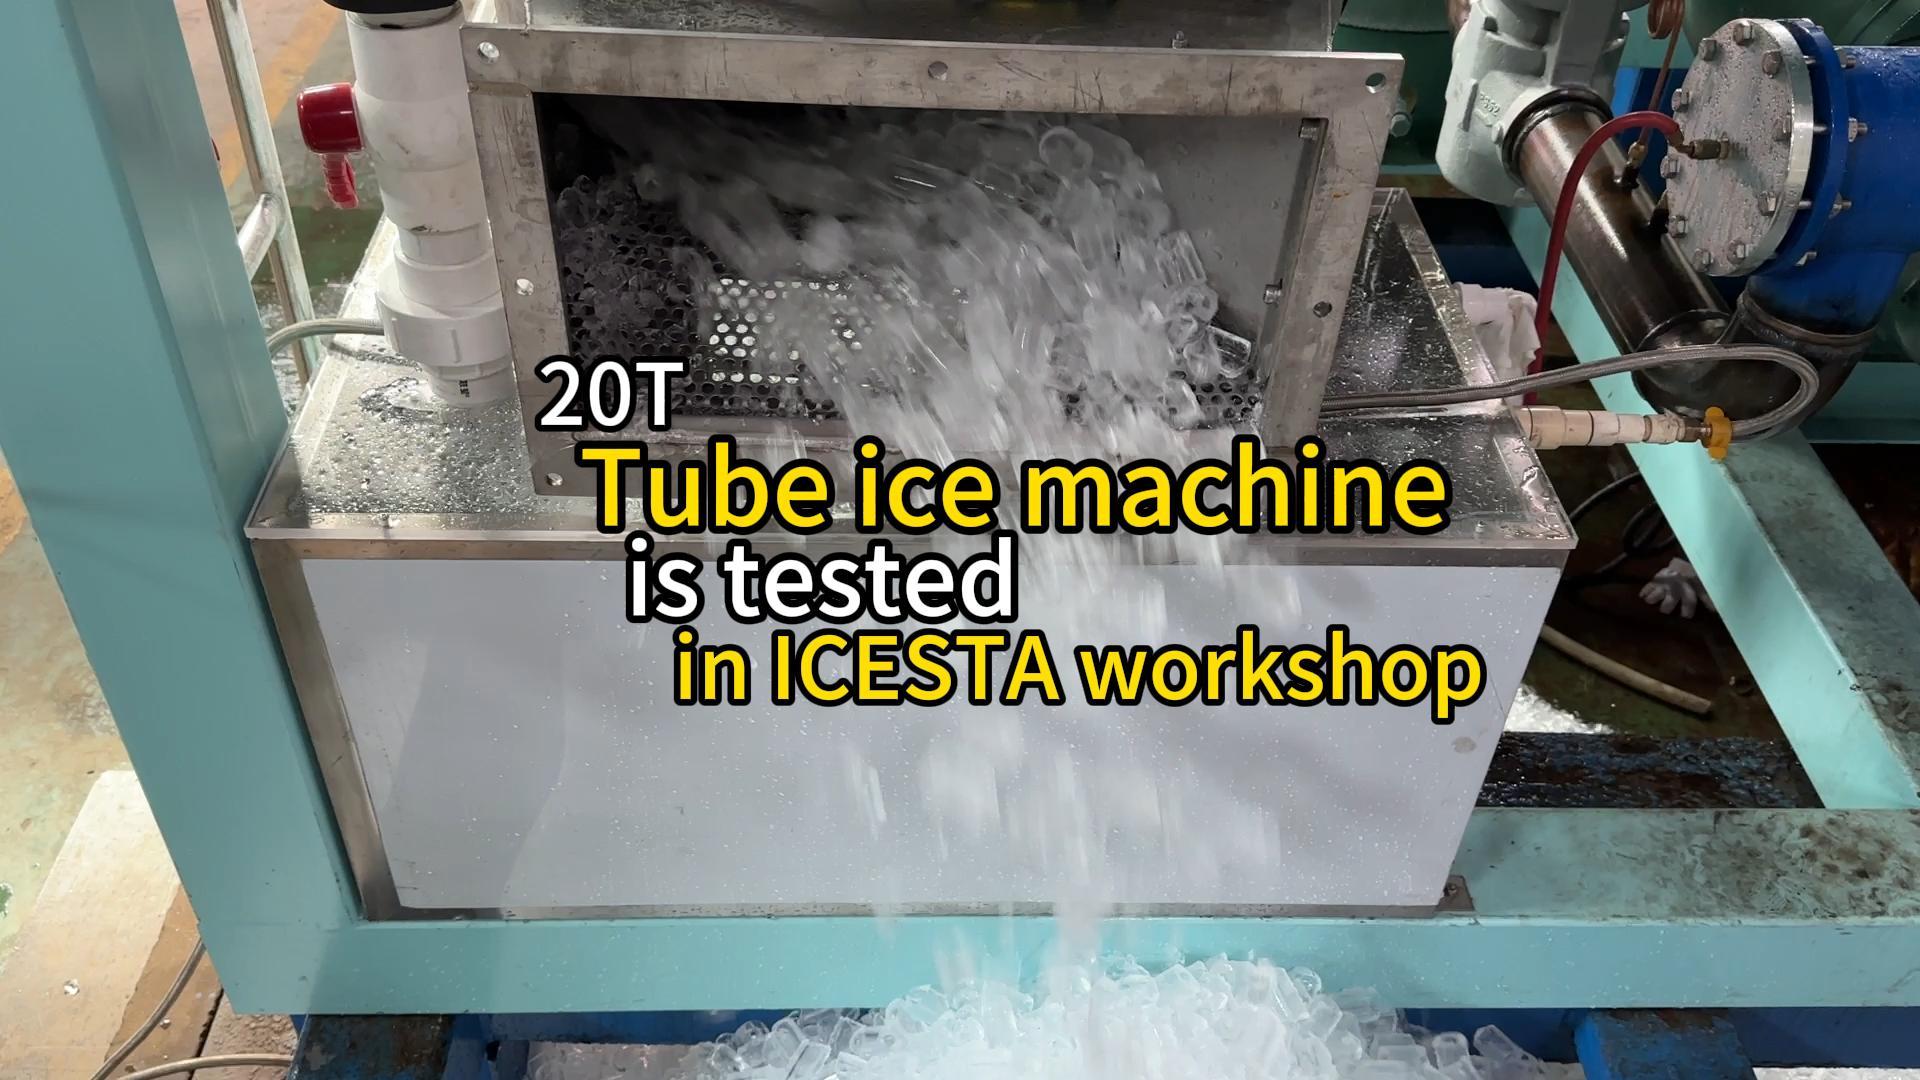 La machine à glace en tube de 20 tonnes est testée dans l'atelier ICESTA...